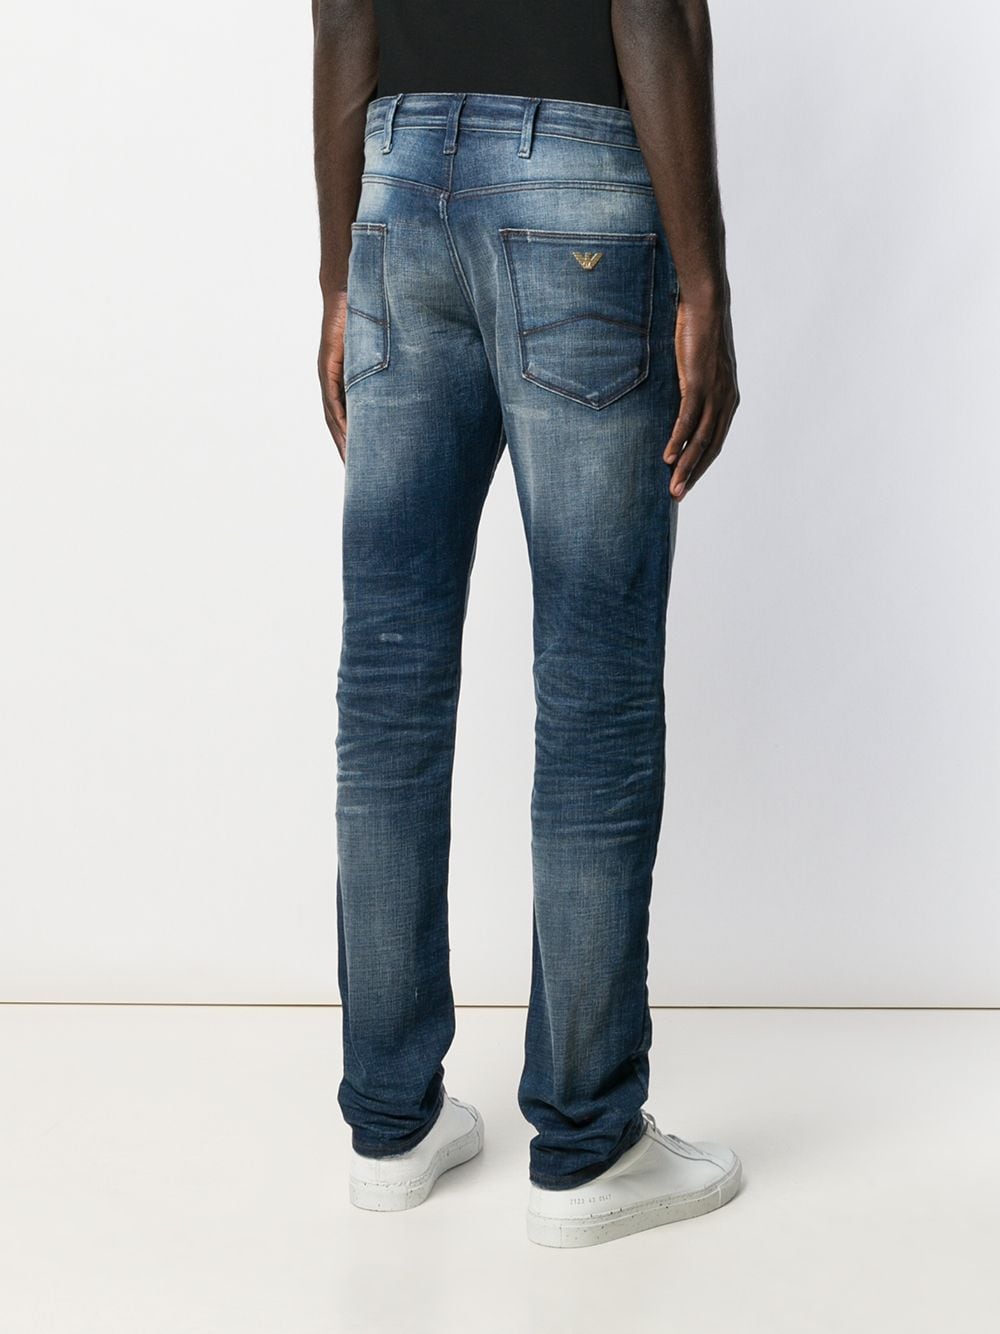 фото Emporio Armani джинсы с эффектом потертости